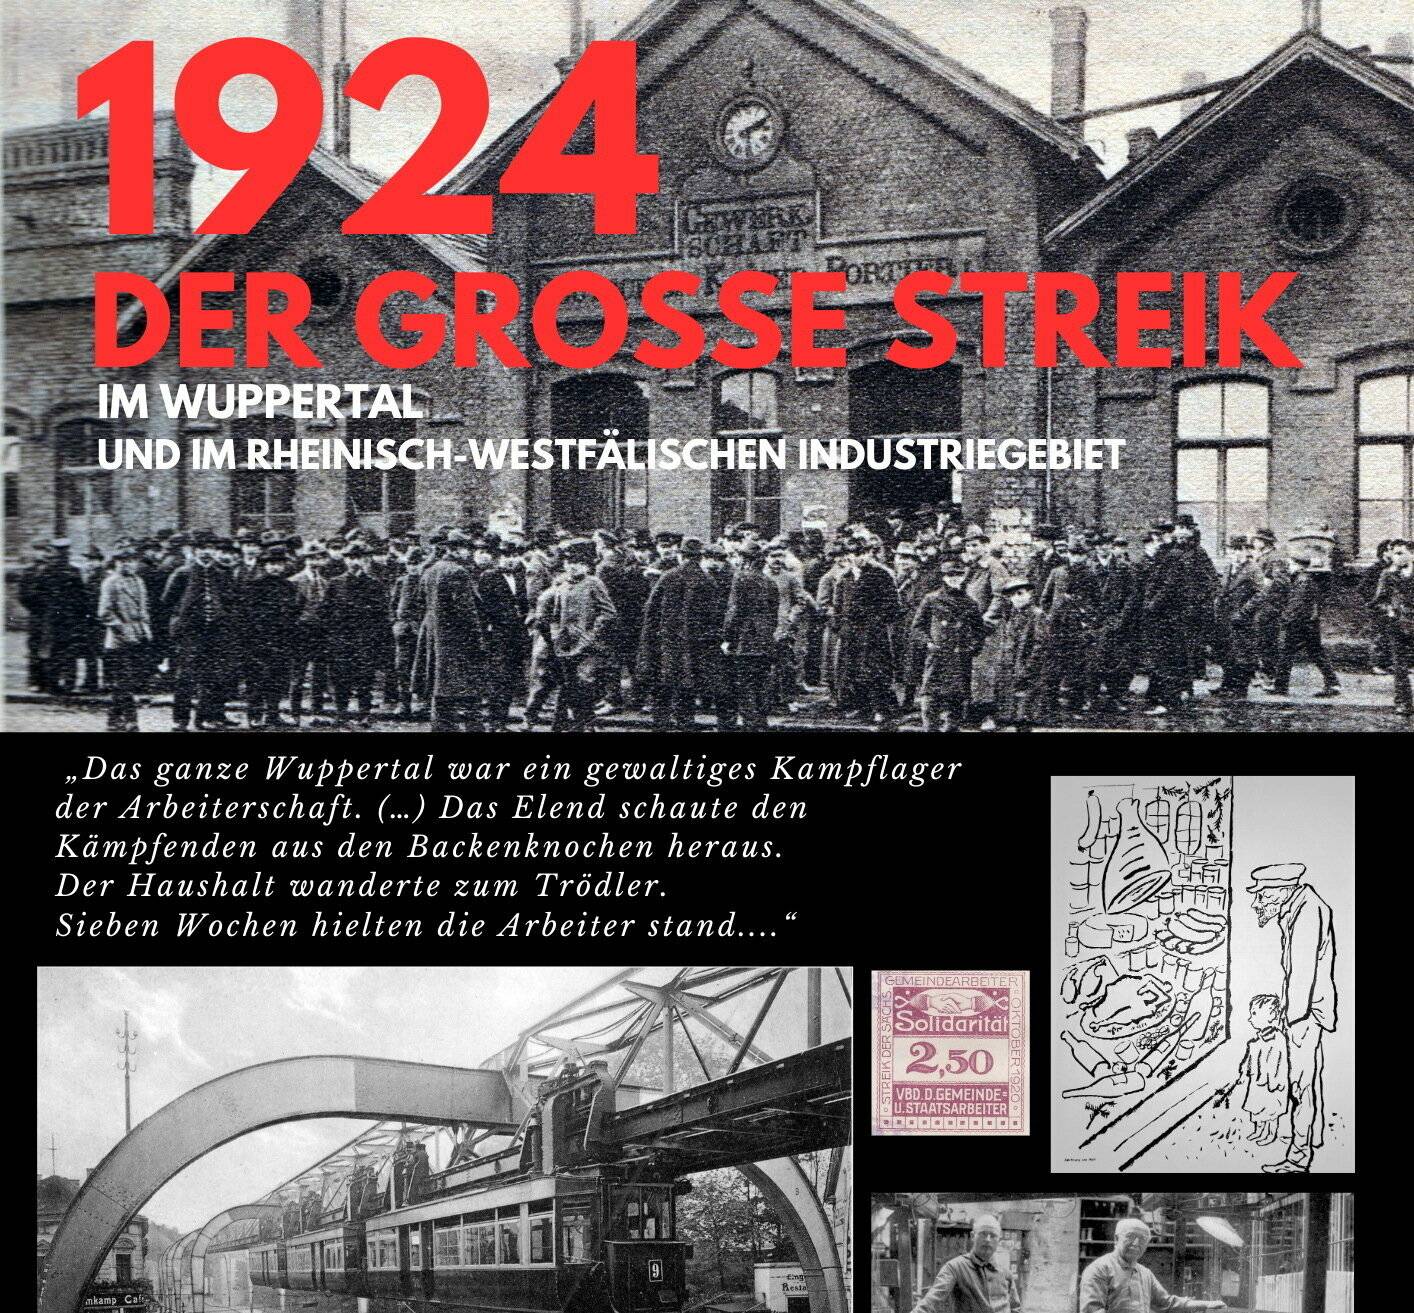  Die Ausstellung „1924 - der große Streik" erinnert an ein wichtiges Kapitel des Kampfes um den Achtstundentag in Wuppertal und im Rheinland.  